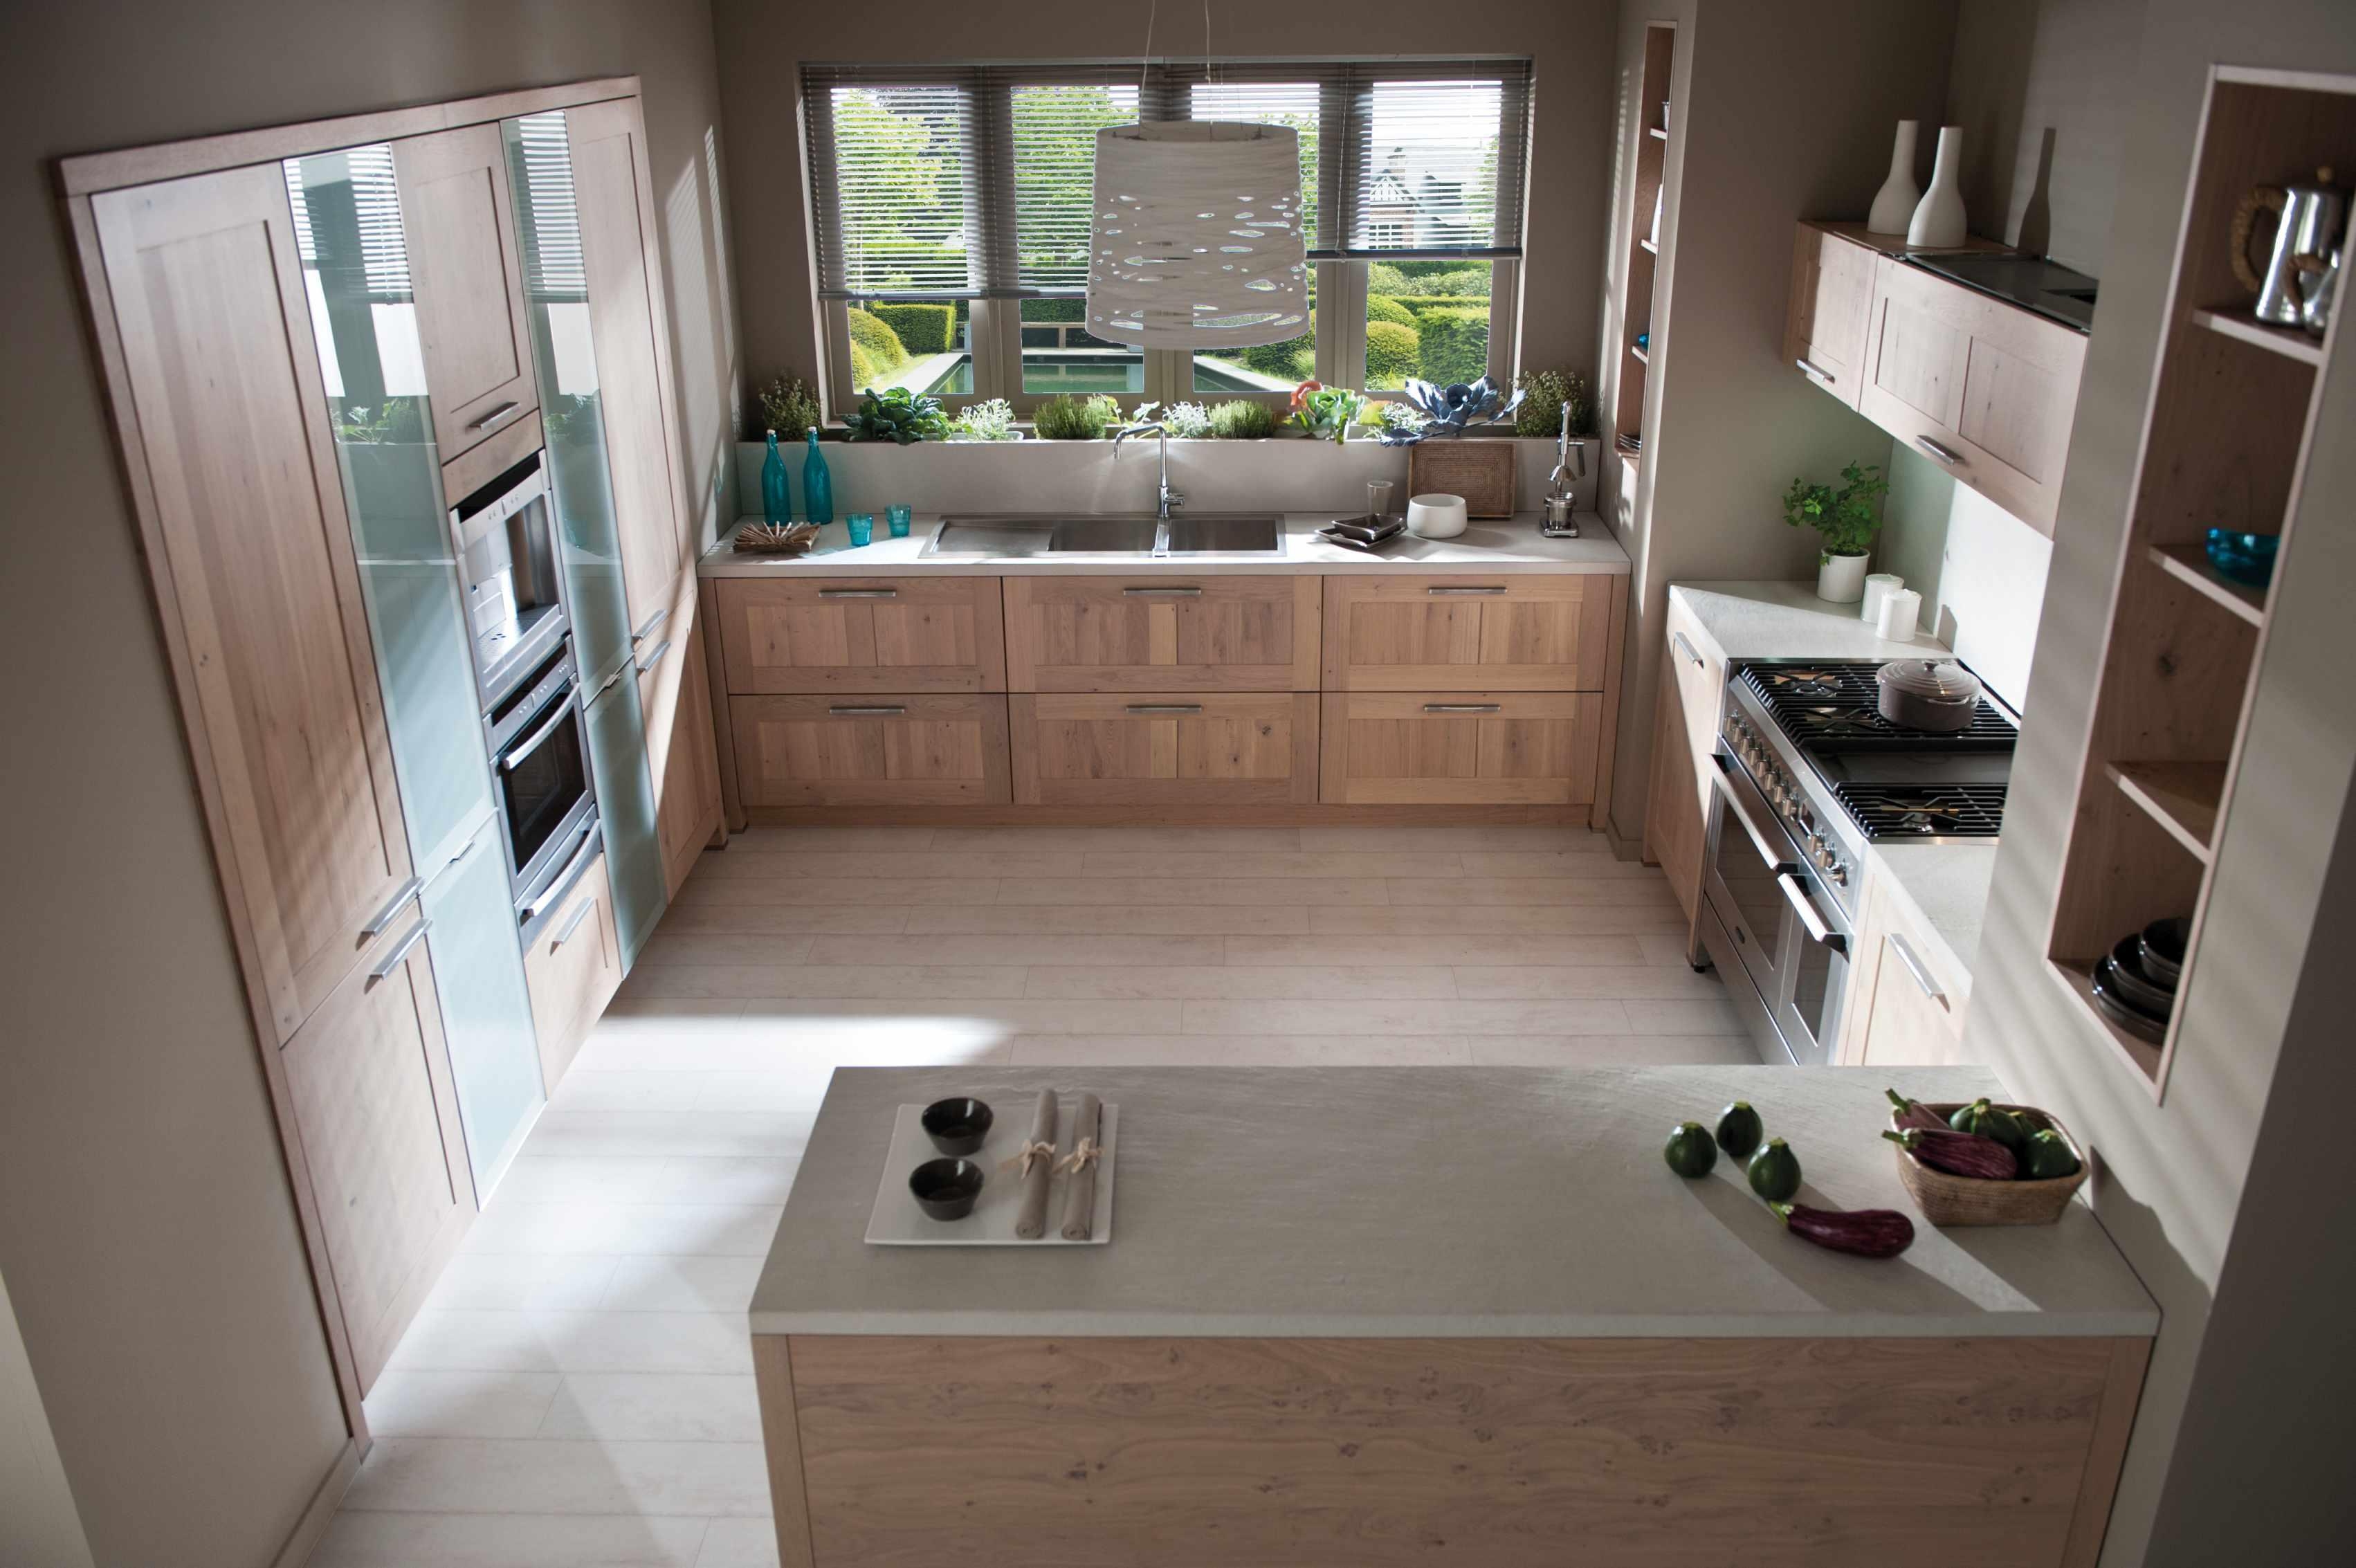 Das Einmaleins der Küchengeometrie: Gerade für große, offene Räume mit einem fließenden Übergang zwischen Küche und Wohnzimmer sind G-Küchen eine ausgezeichnete Wahl.